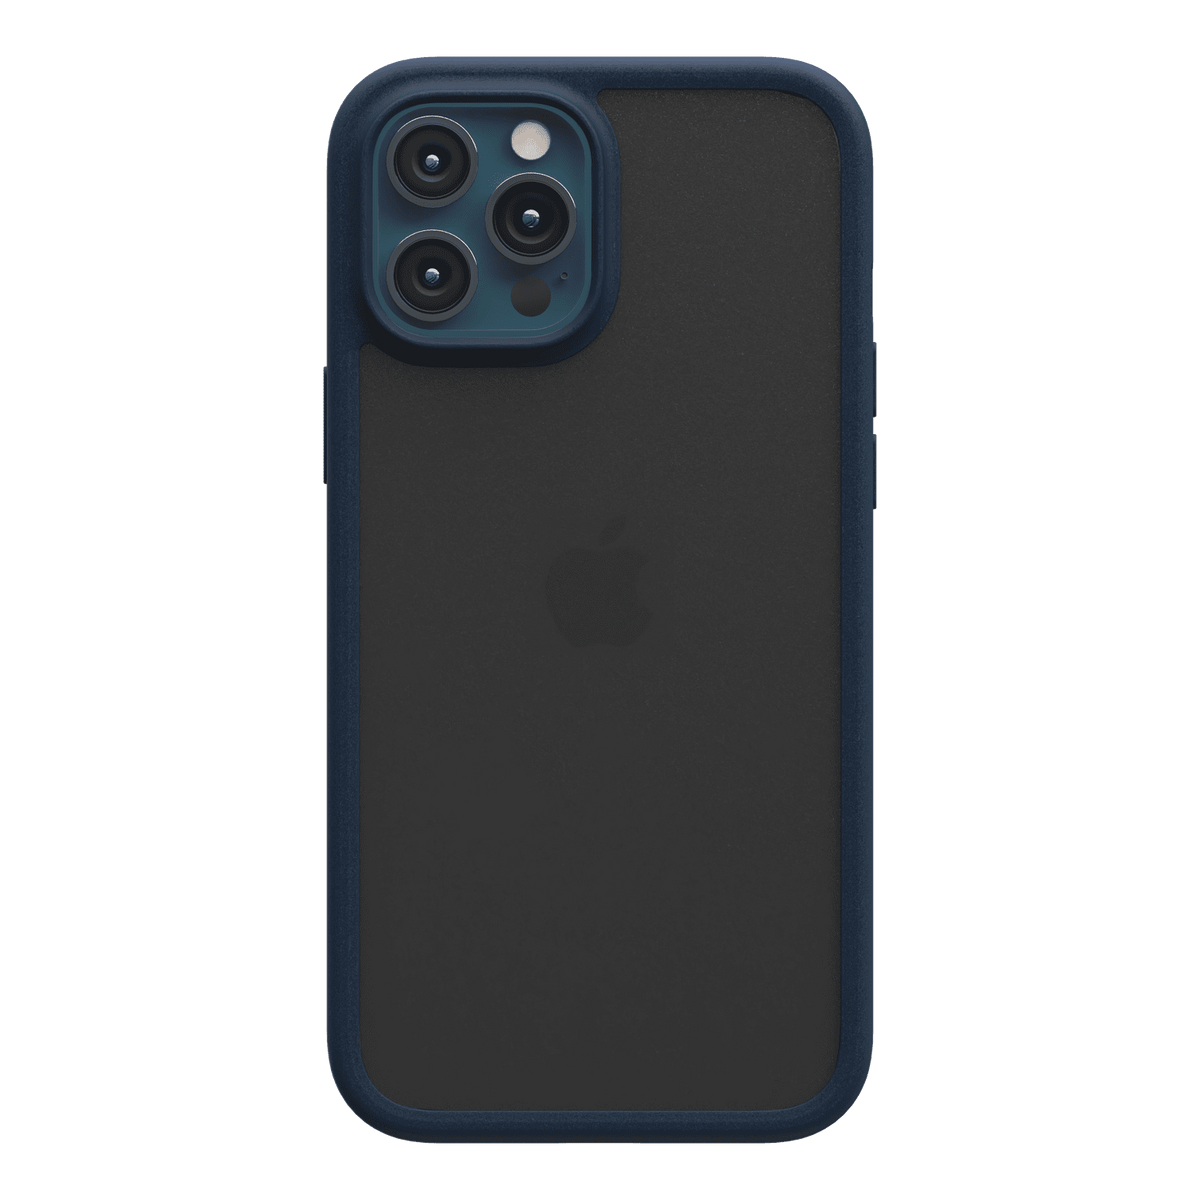 estuches proteccion switcheasy aero + apple iphone 12 pro max color azul marino